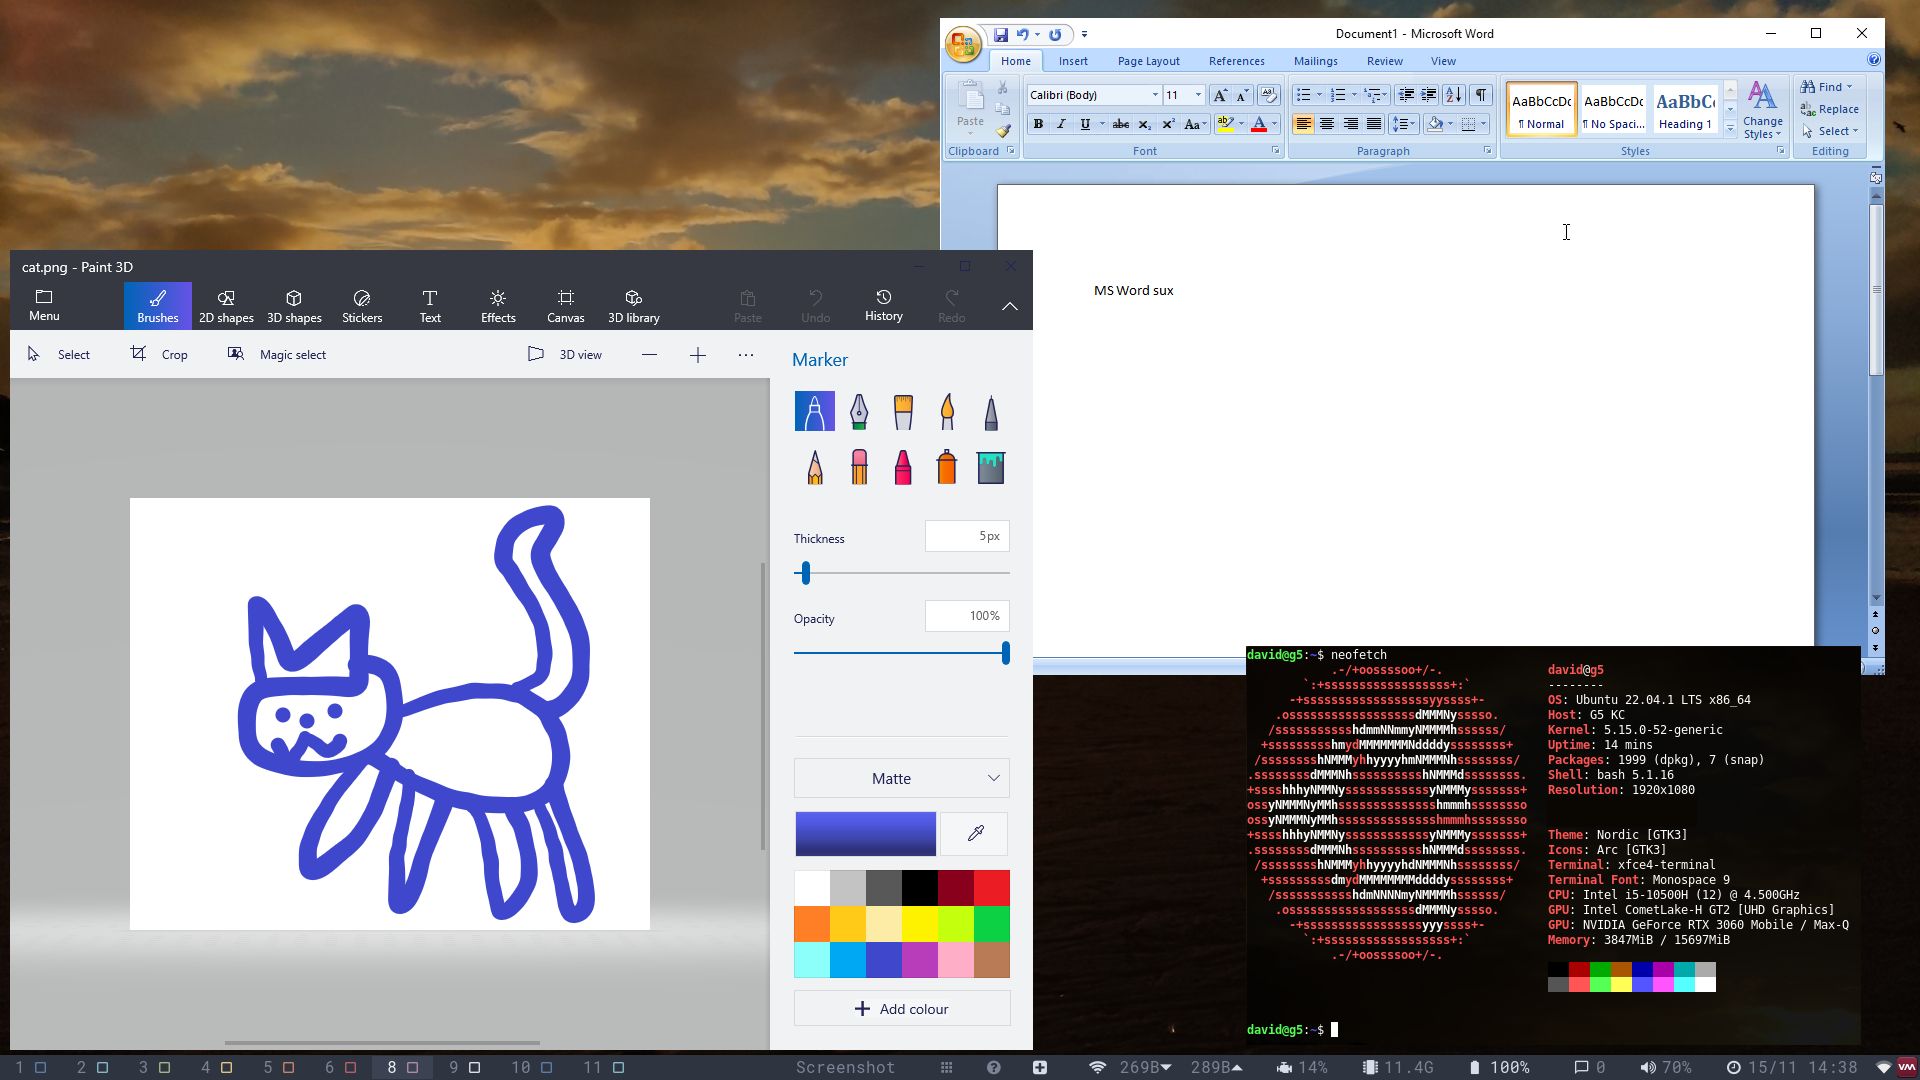 winapps sur Linux, y compris word 97 et Paint 3D - avec une mauvaise image d'un chat